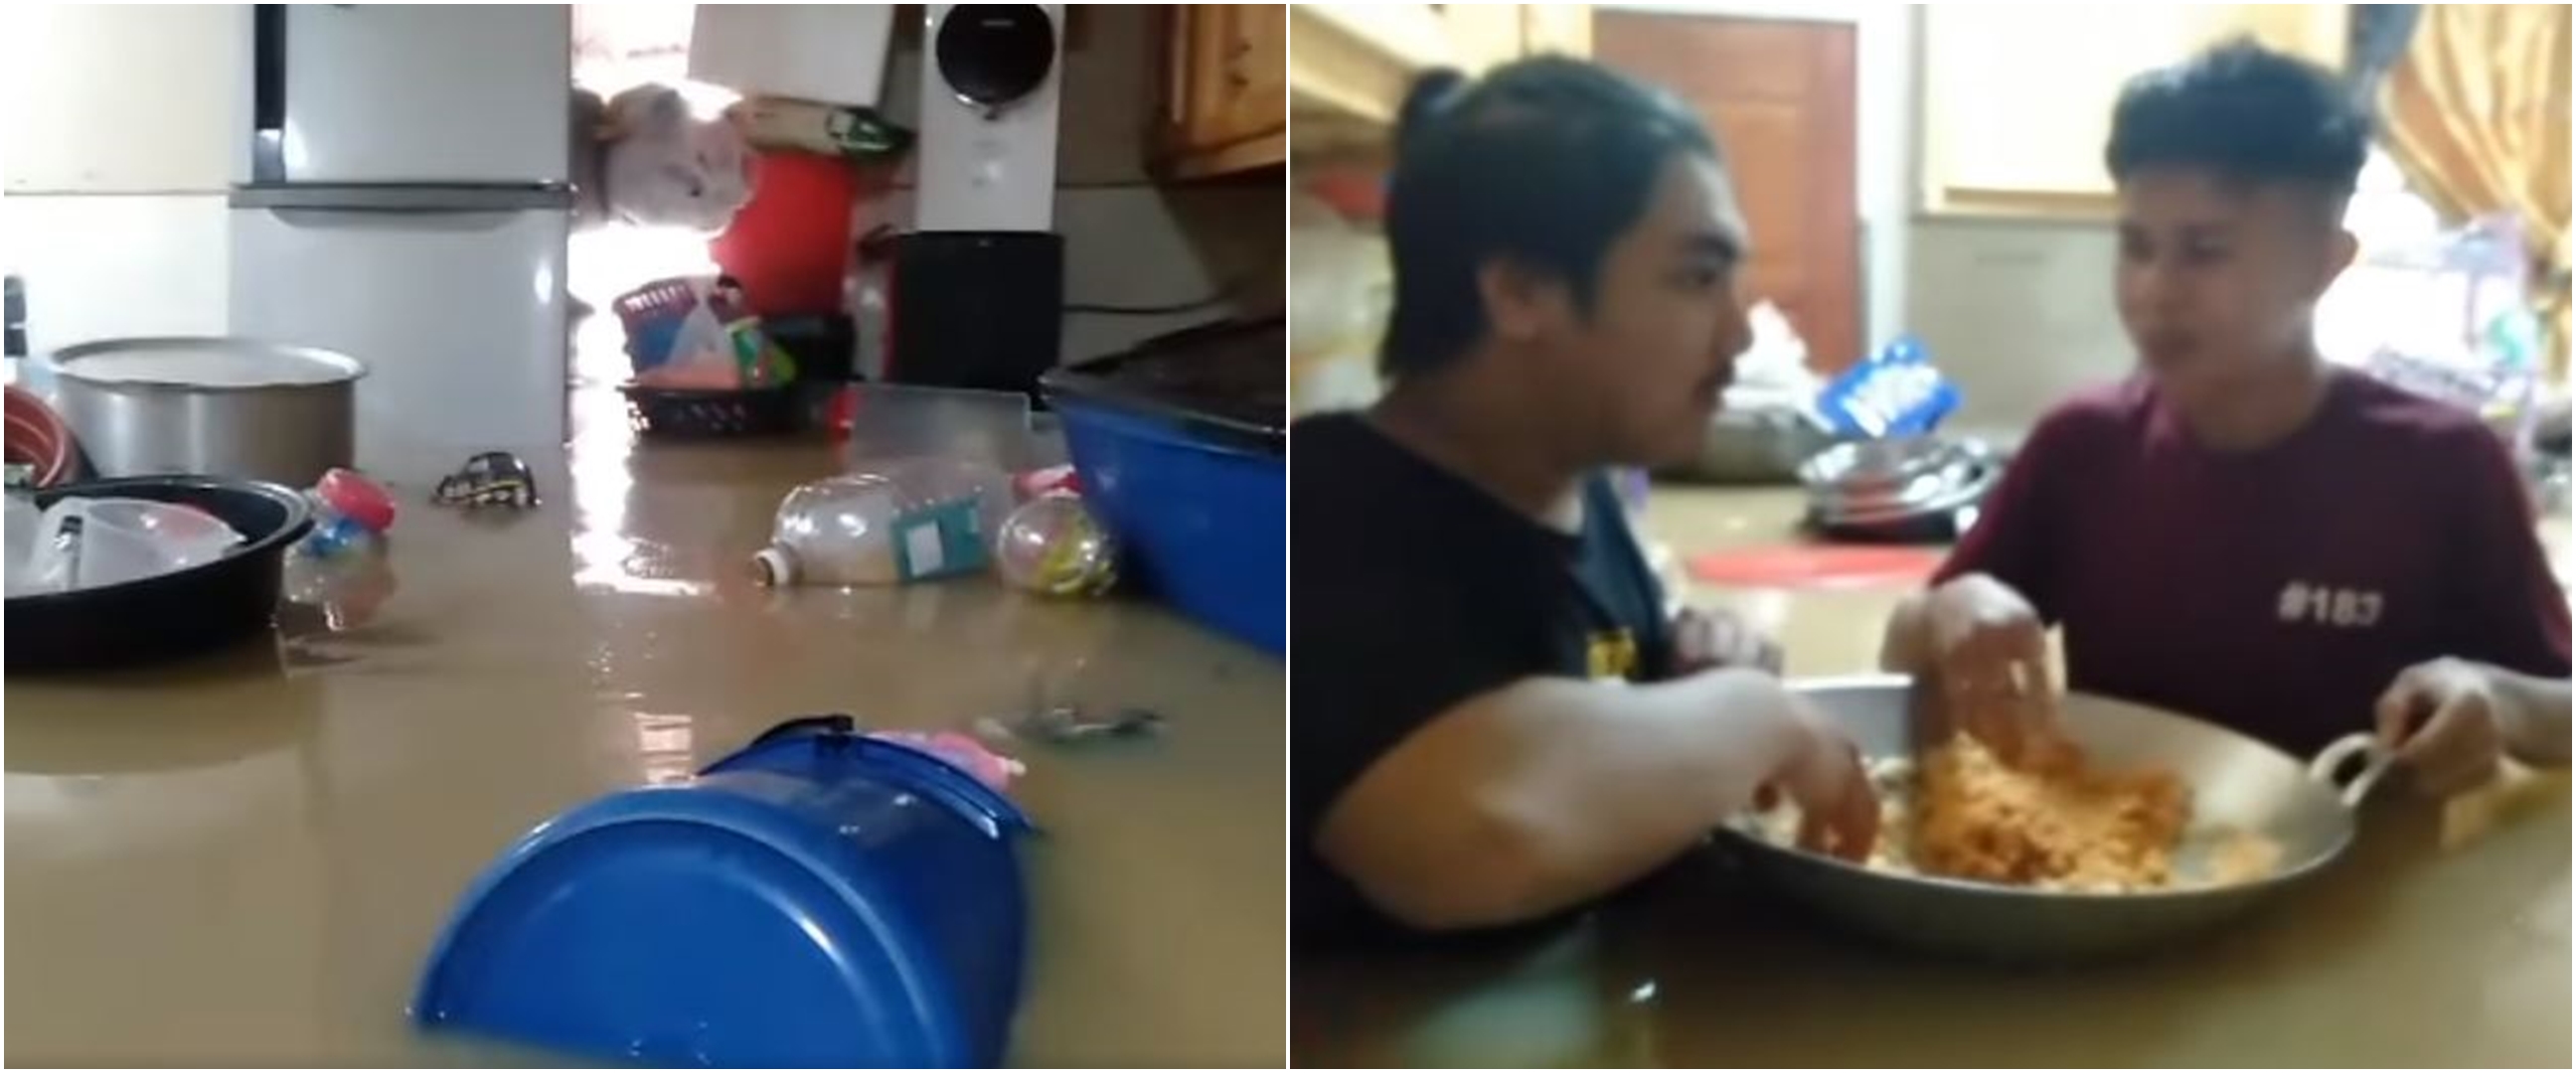 Terjebak banjir, cara makan pemuda ini jadi sorotan